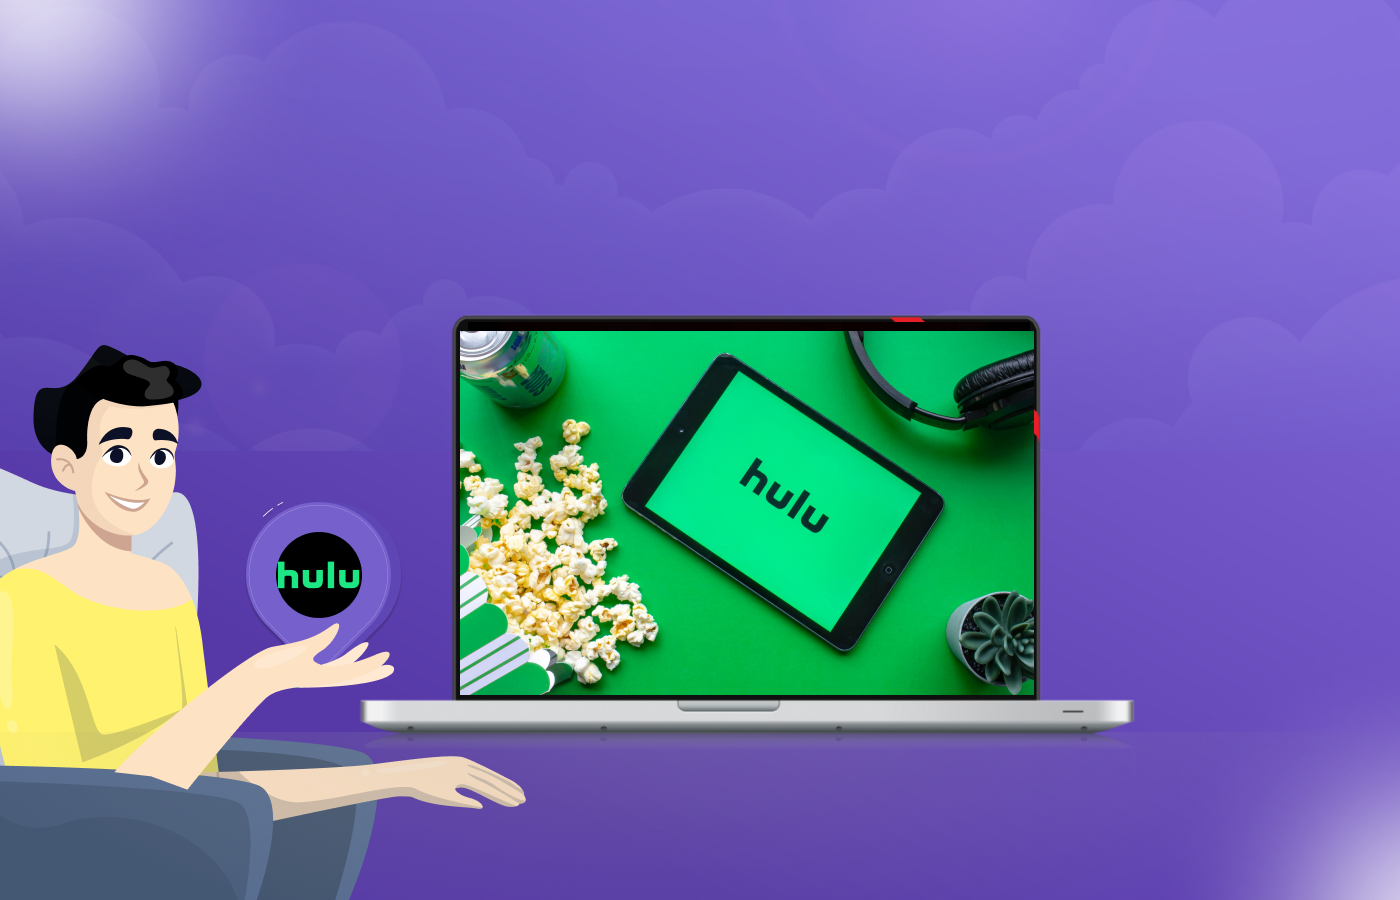 Hulu on Mac